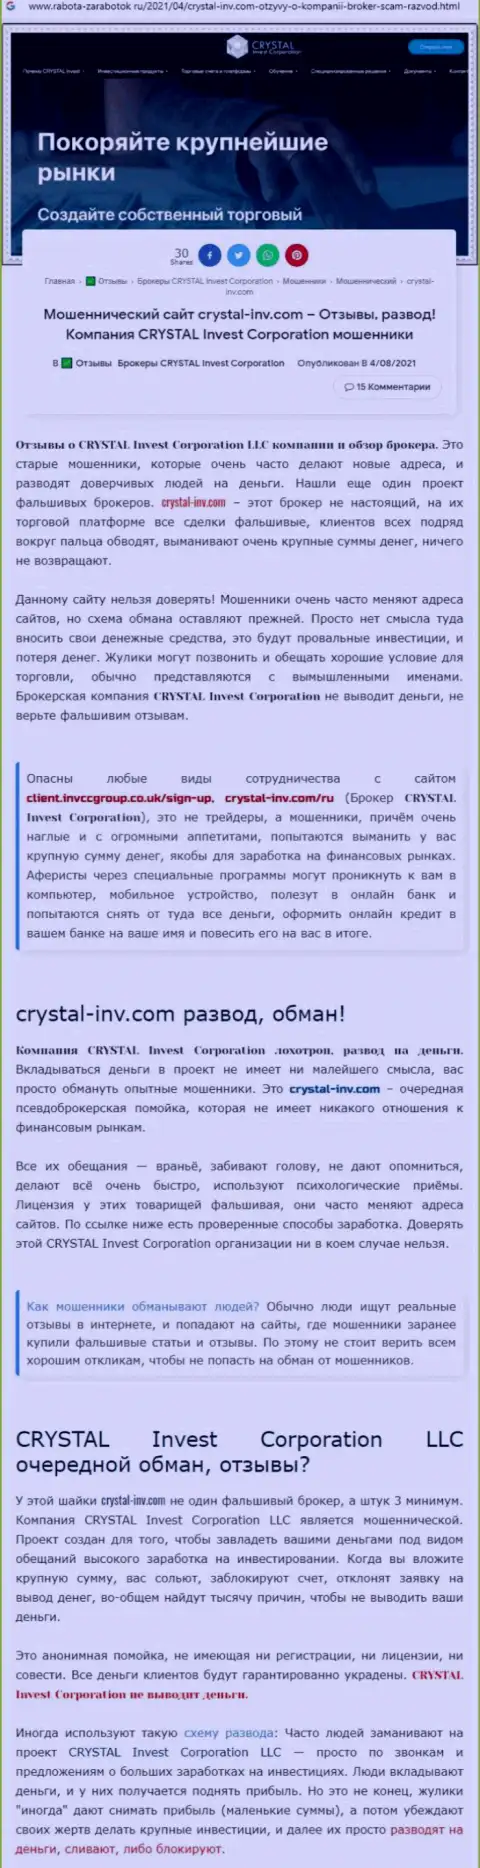 Материал, выводящий на чистую воду компанию КристалИнв, взятый с сайта с обзорами различных организаций